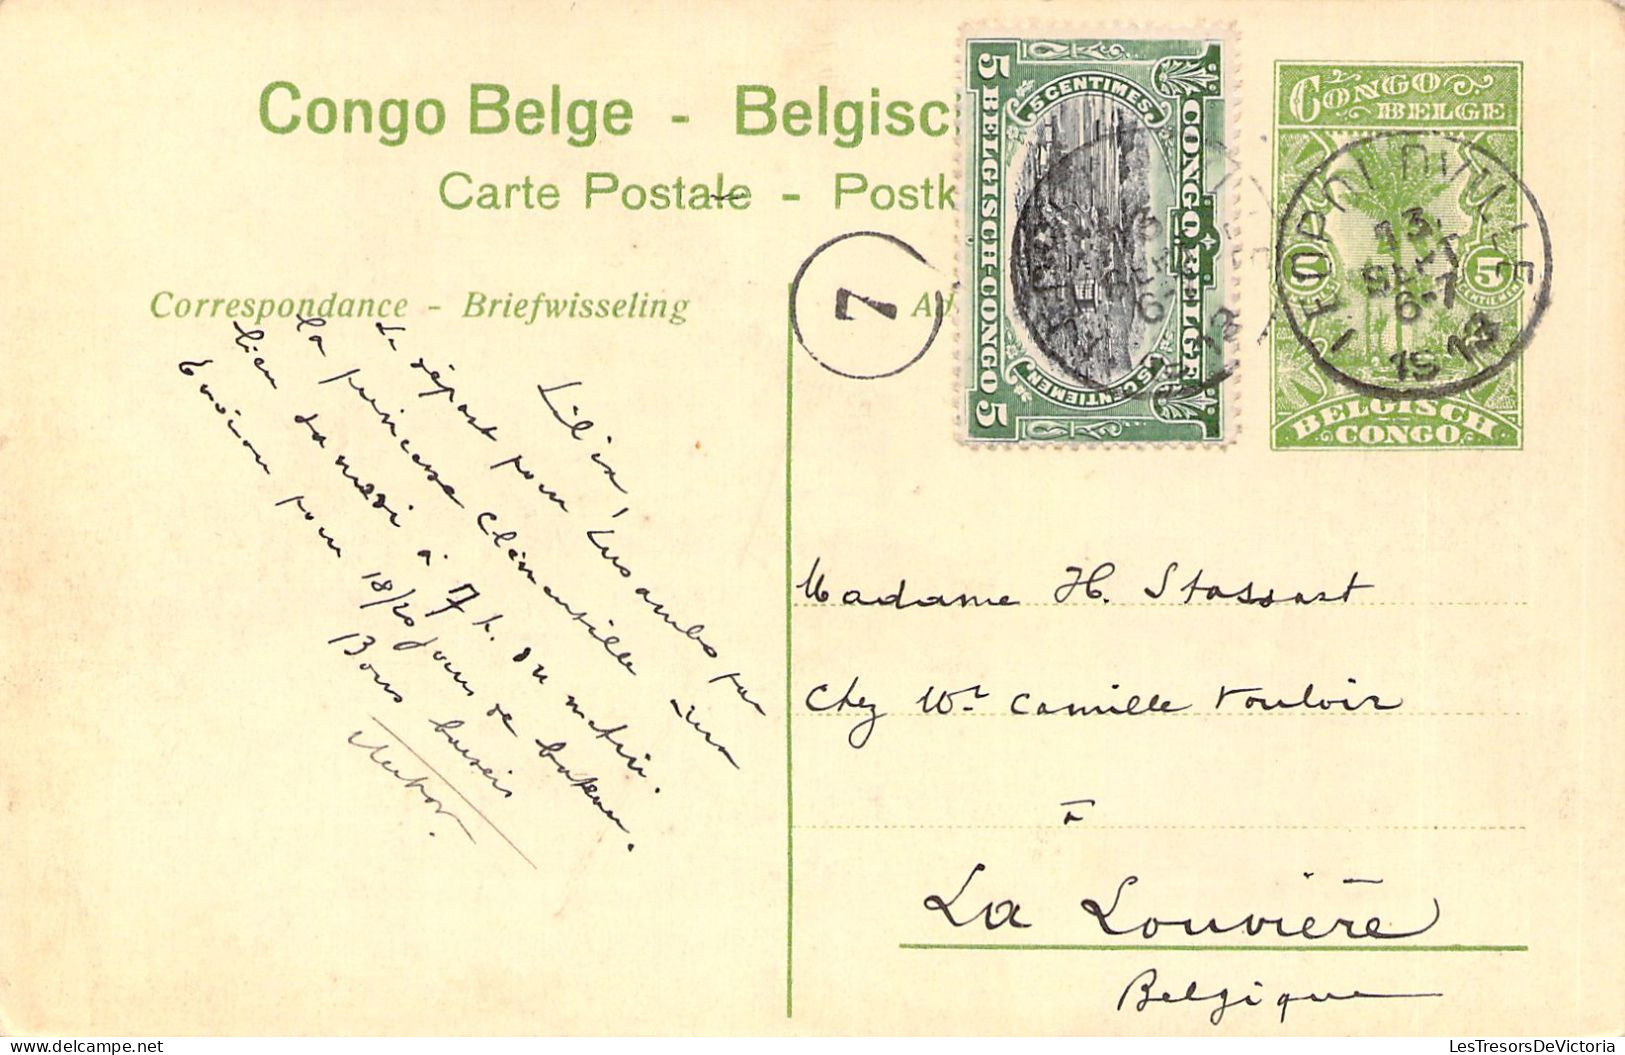 CONGO - Emballage Du Poisson Sec Dans La Mayumbe - Carte Postale Ancienne - Otros & Sin Clasificación